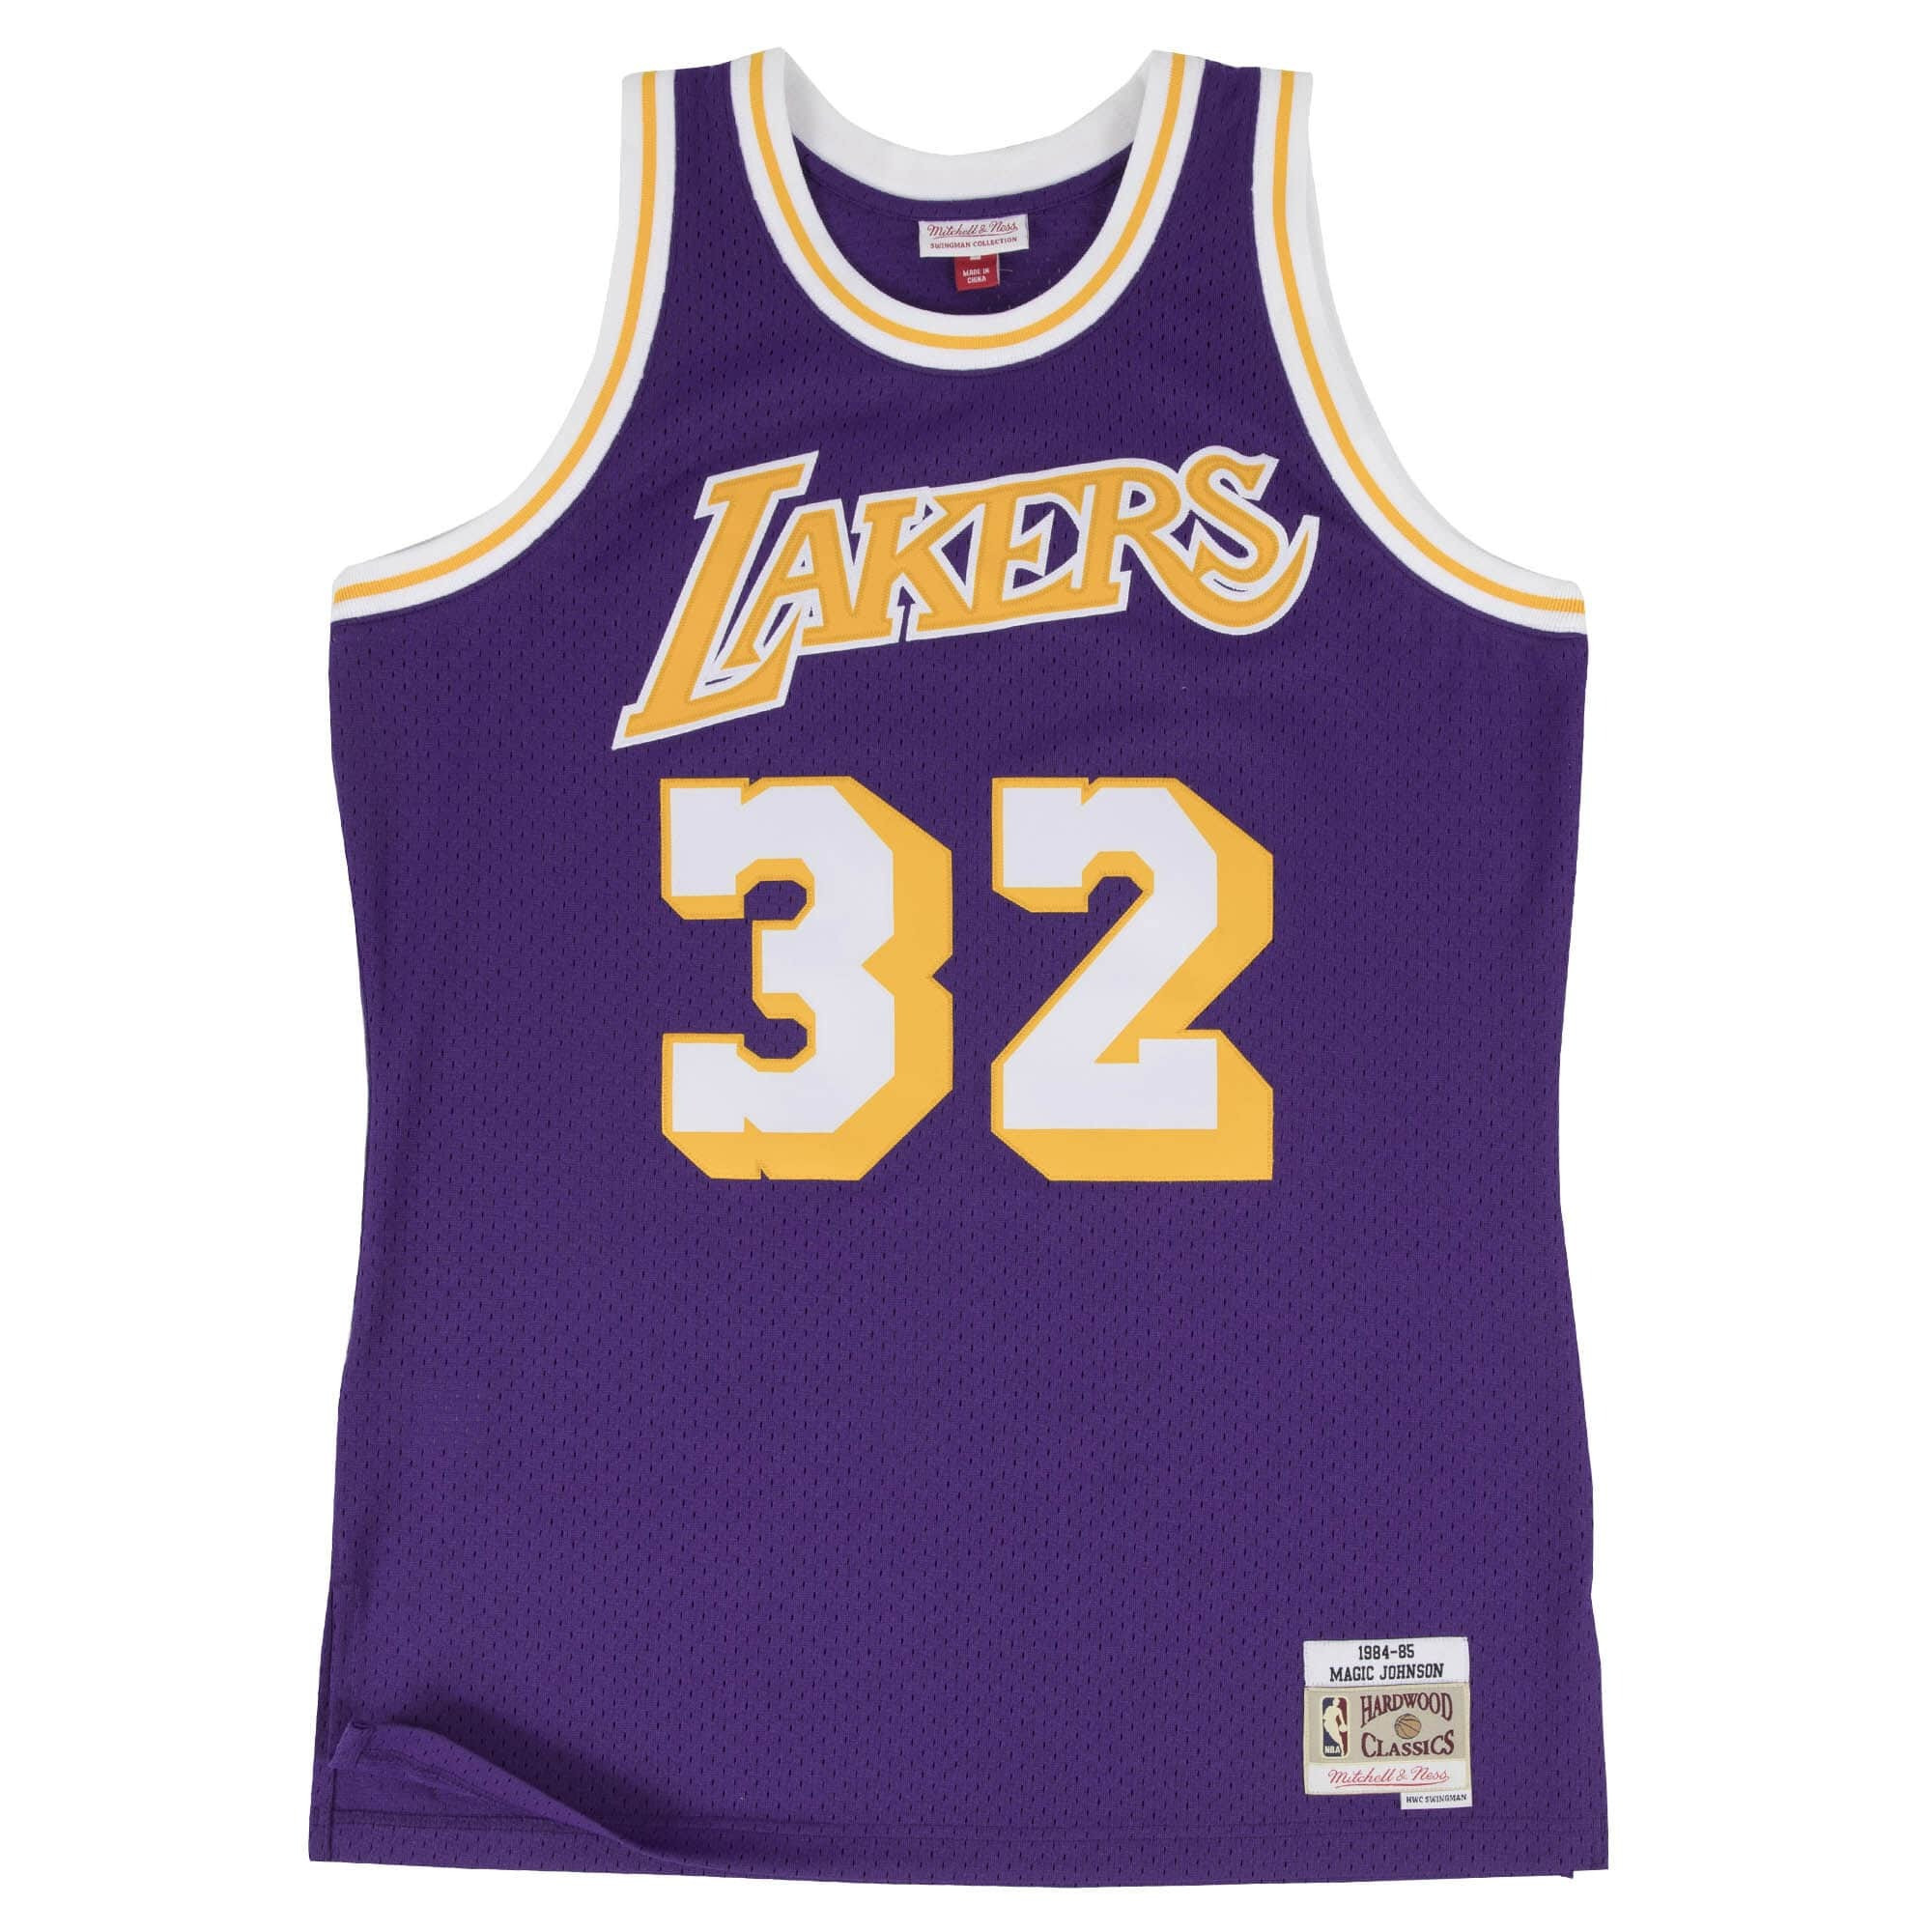 Mitchell & Ness NBA Los Angeles Lakers Magic Johnson Swingman Jersey Road 1984-85 Basketball Jersey - Purple